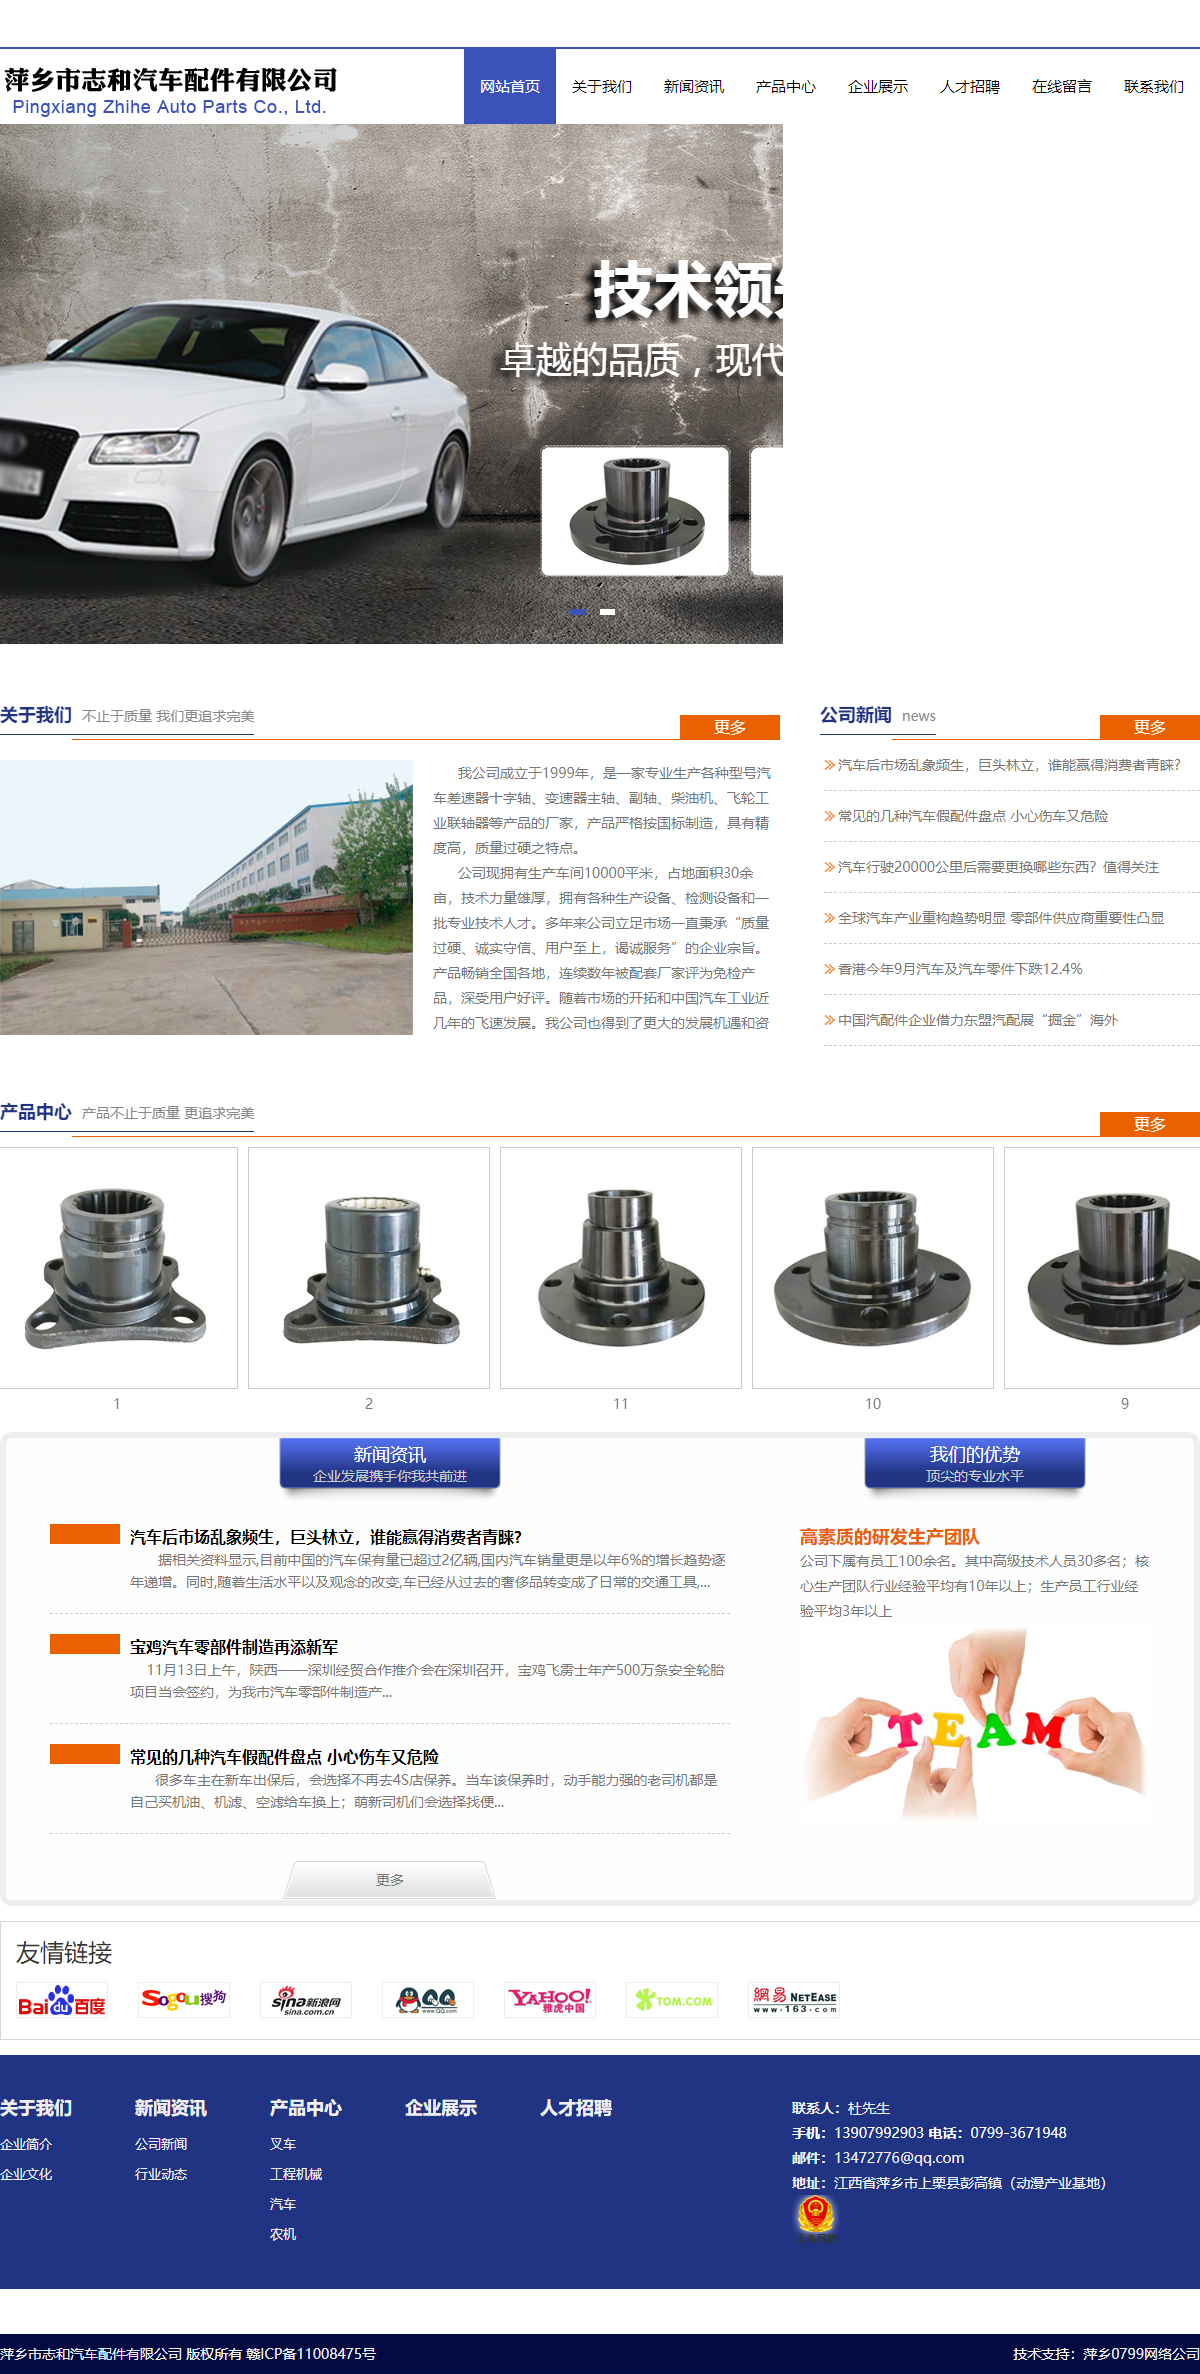 萍乡市志和传动科技有限公司网站案例